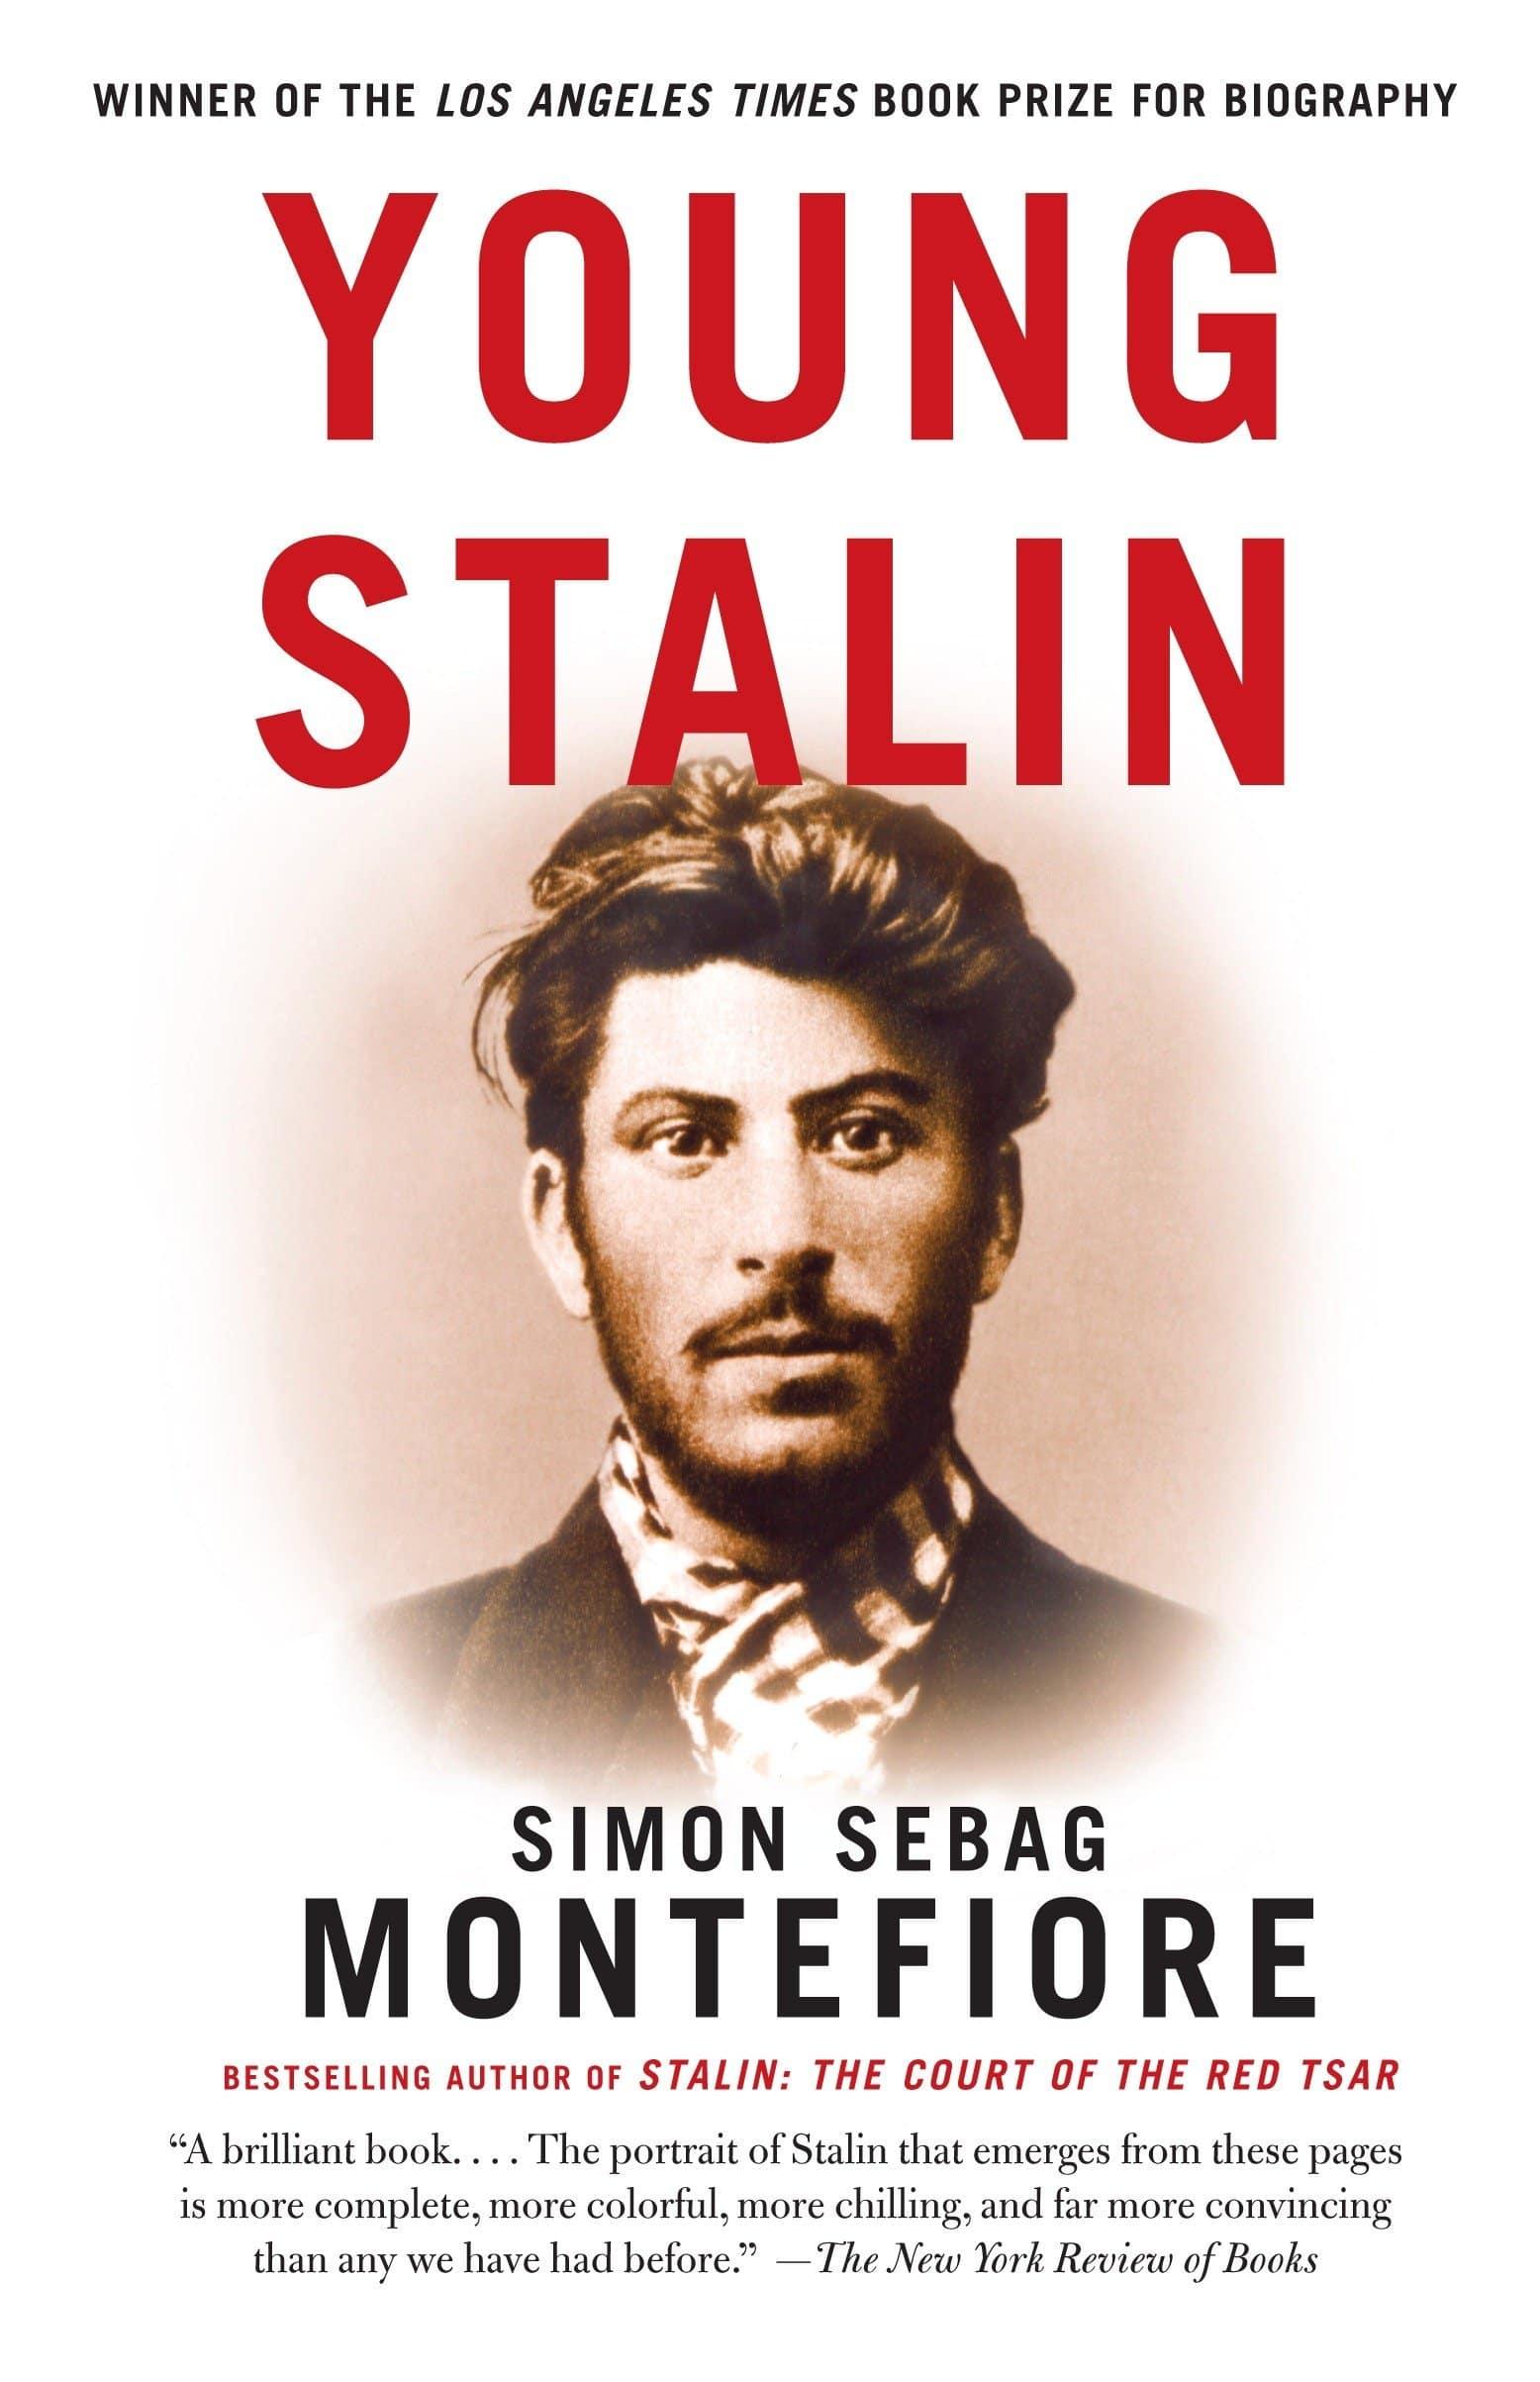 غلاف كتاب ستالين الصغير - Young Stalin.